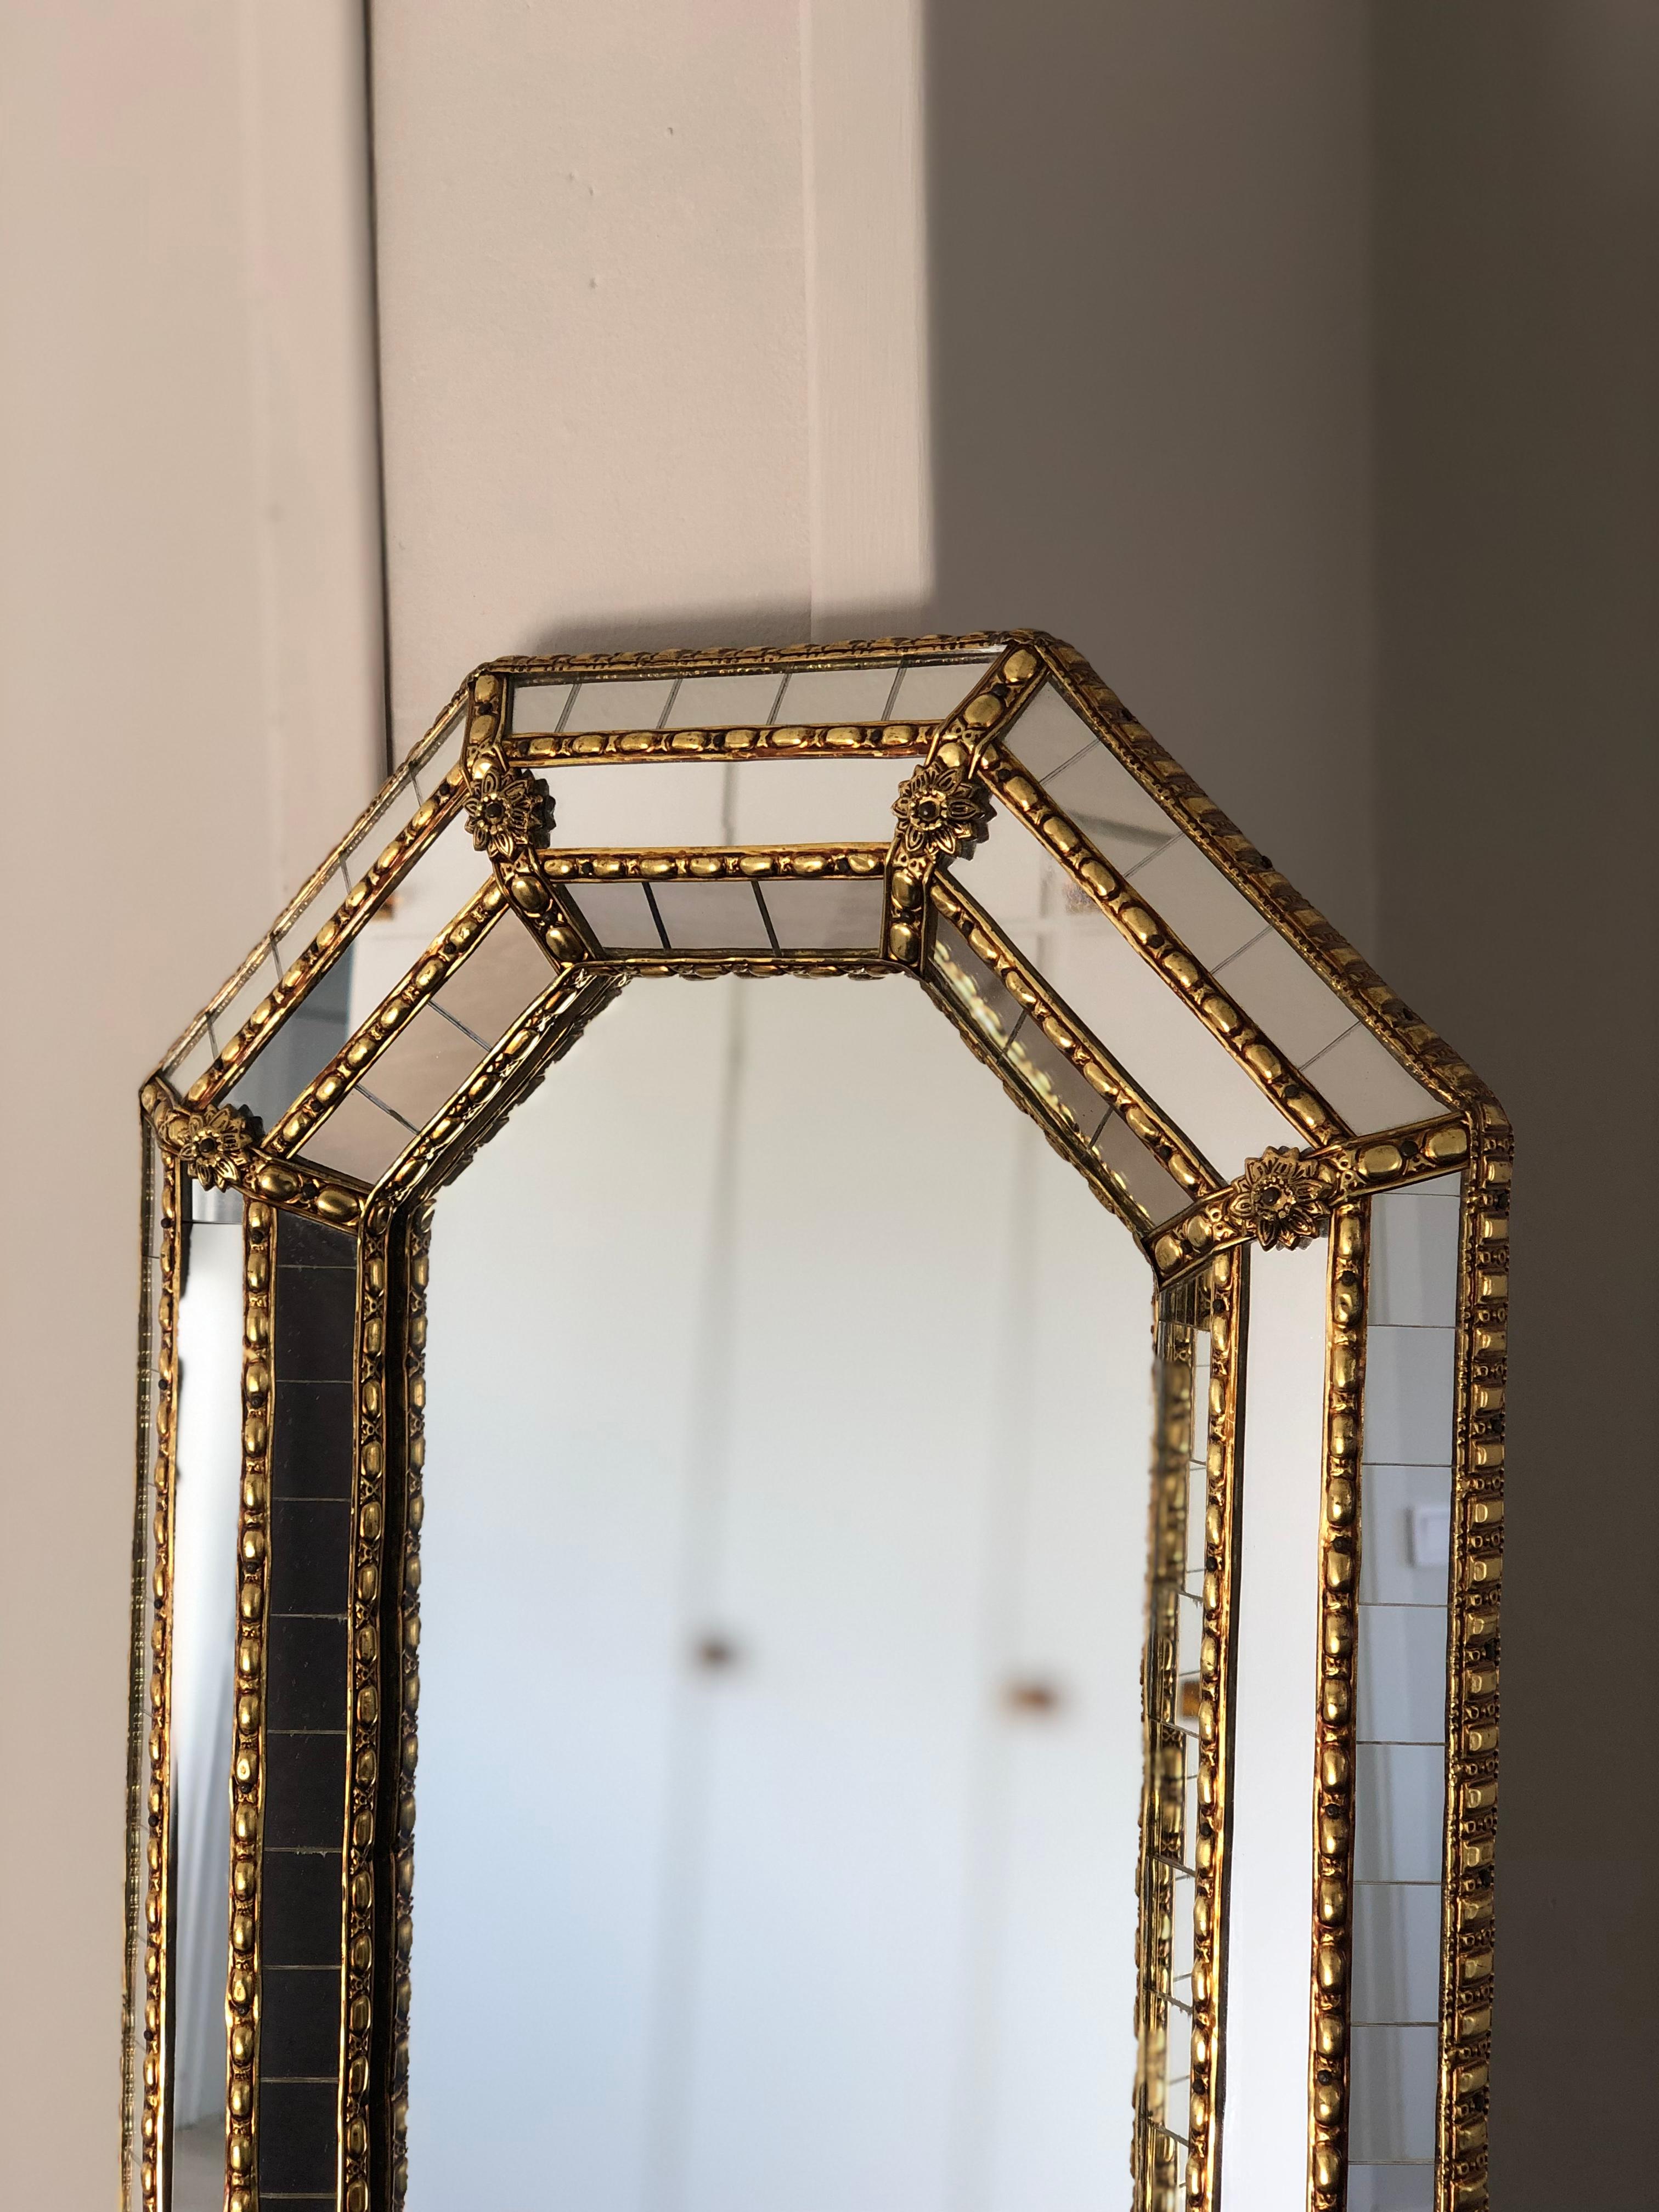 Magnifique petit miroir espagnol avec un cadre en verre vénitien avec une bande dorée en laiton. Le cadre est composé de petits cristaux à l'extérieur et à l'intérieur, et de cristaux plus grands dans la ligne centrale. La bande de laiton maintient